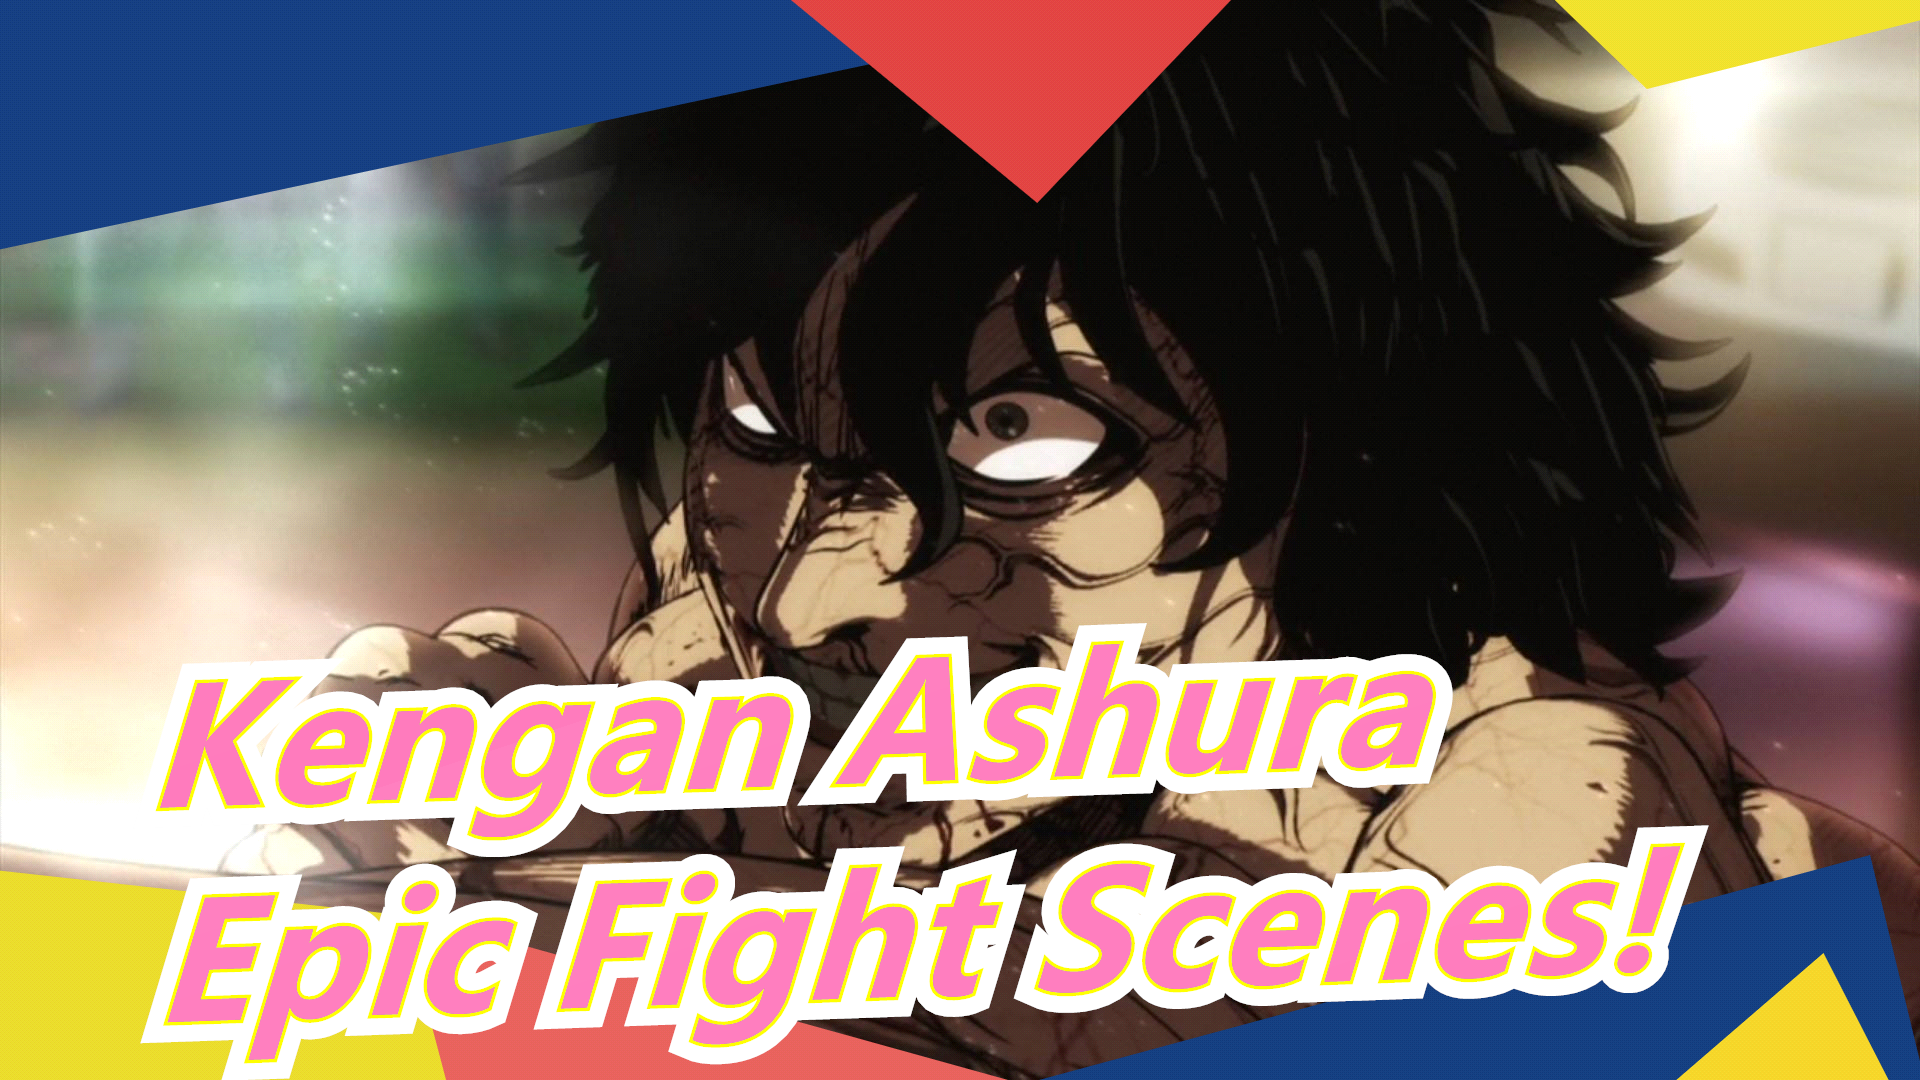 Kengan ashura amazing epic fight scenes